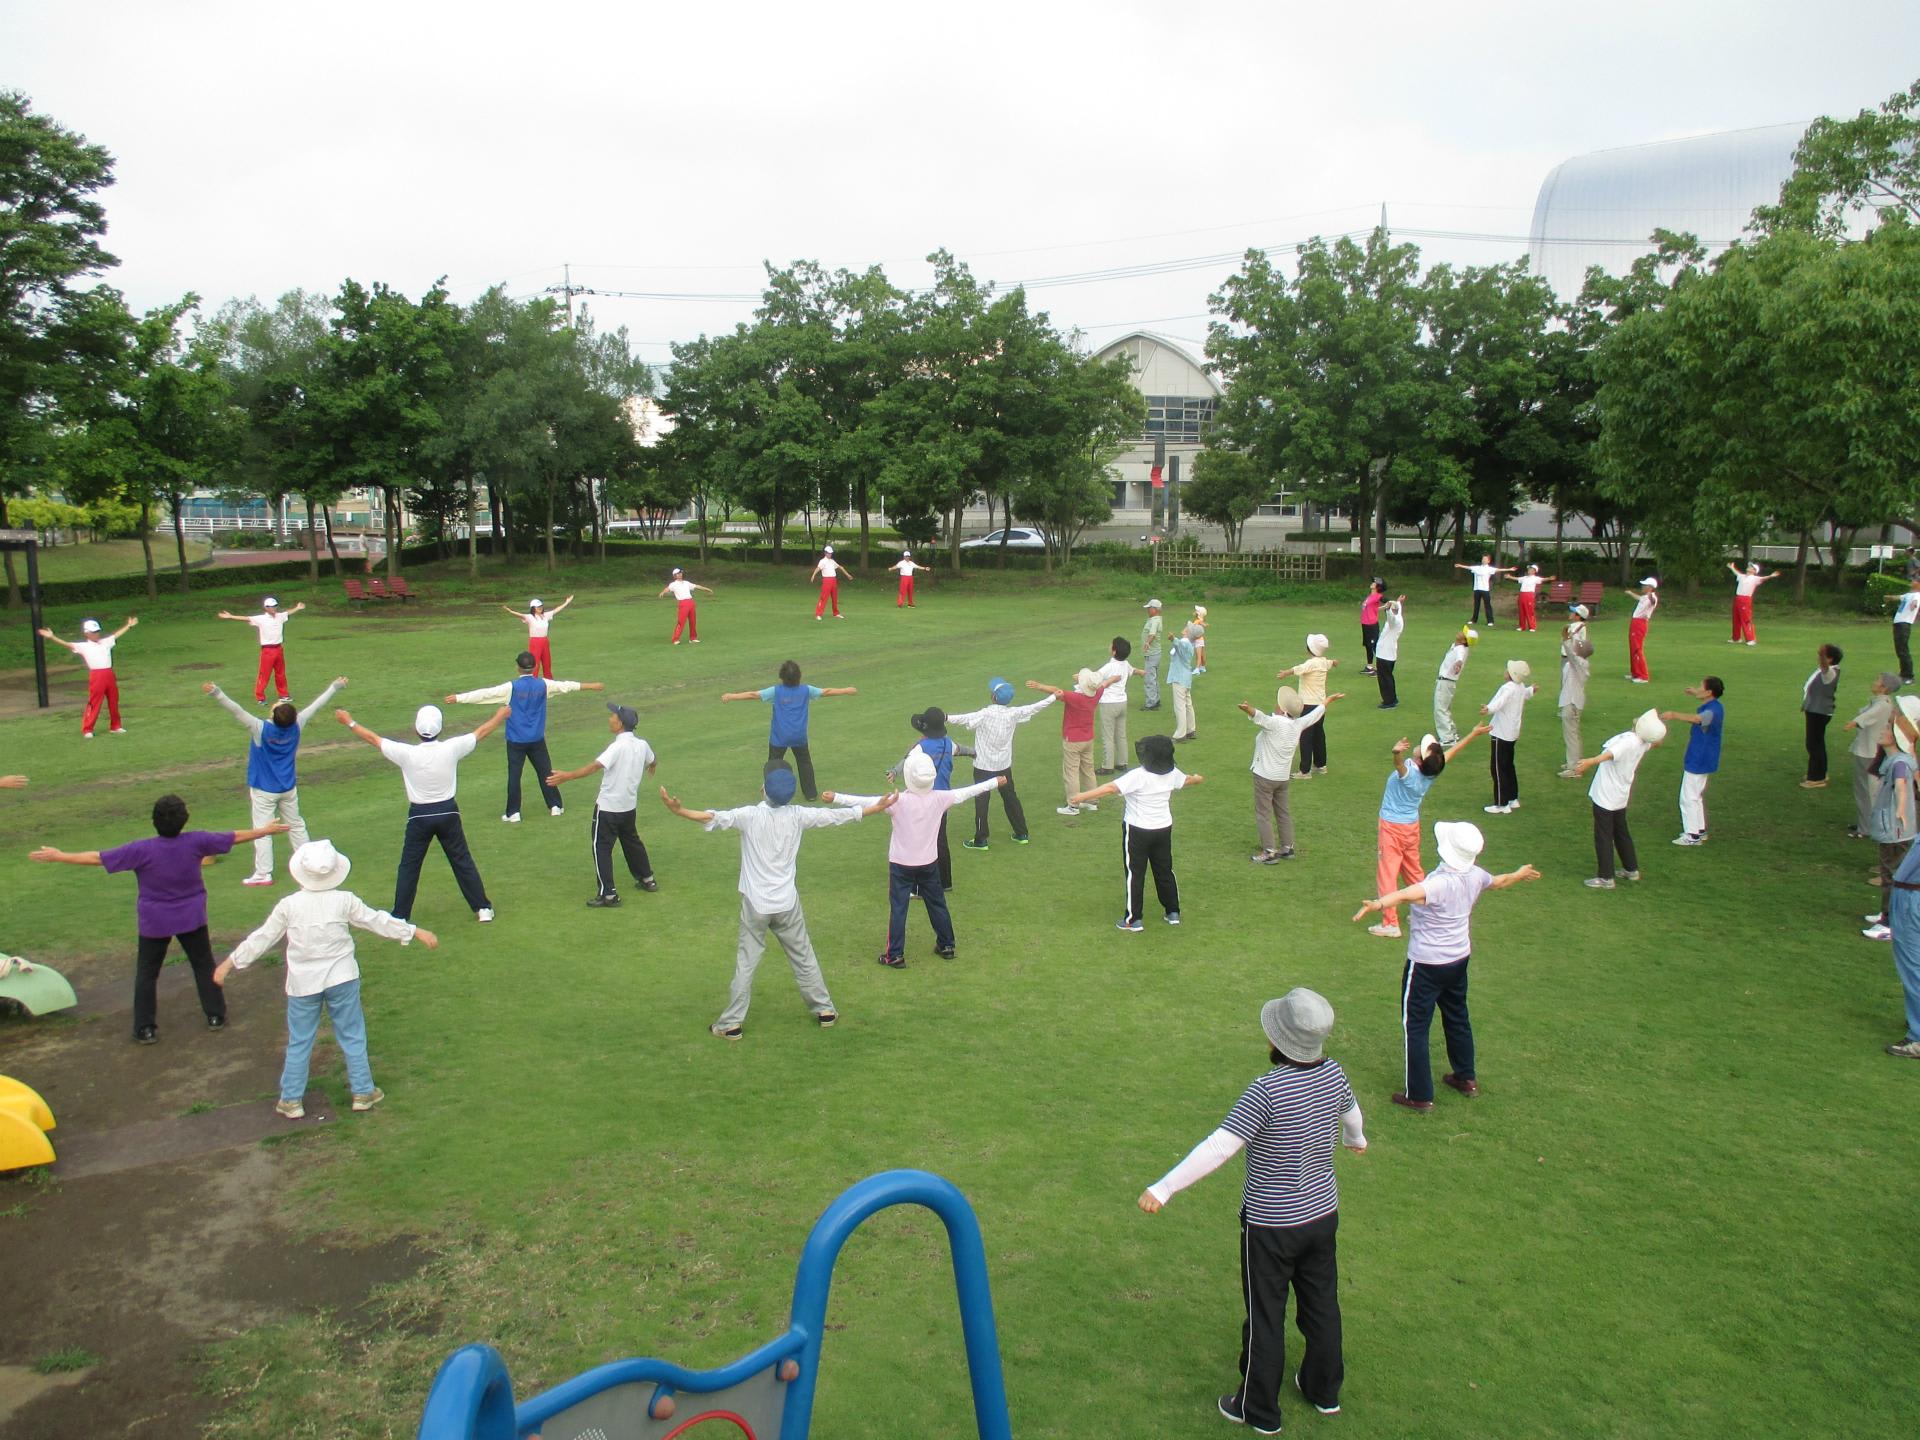 ラジオ体操と公園ウォーキング始まる - 北本総合公園公式ブログ